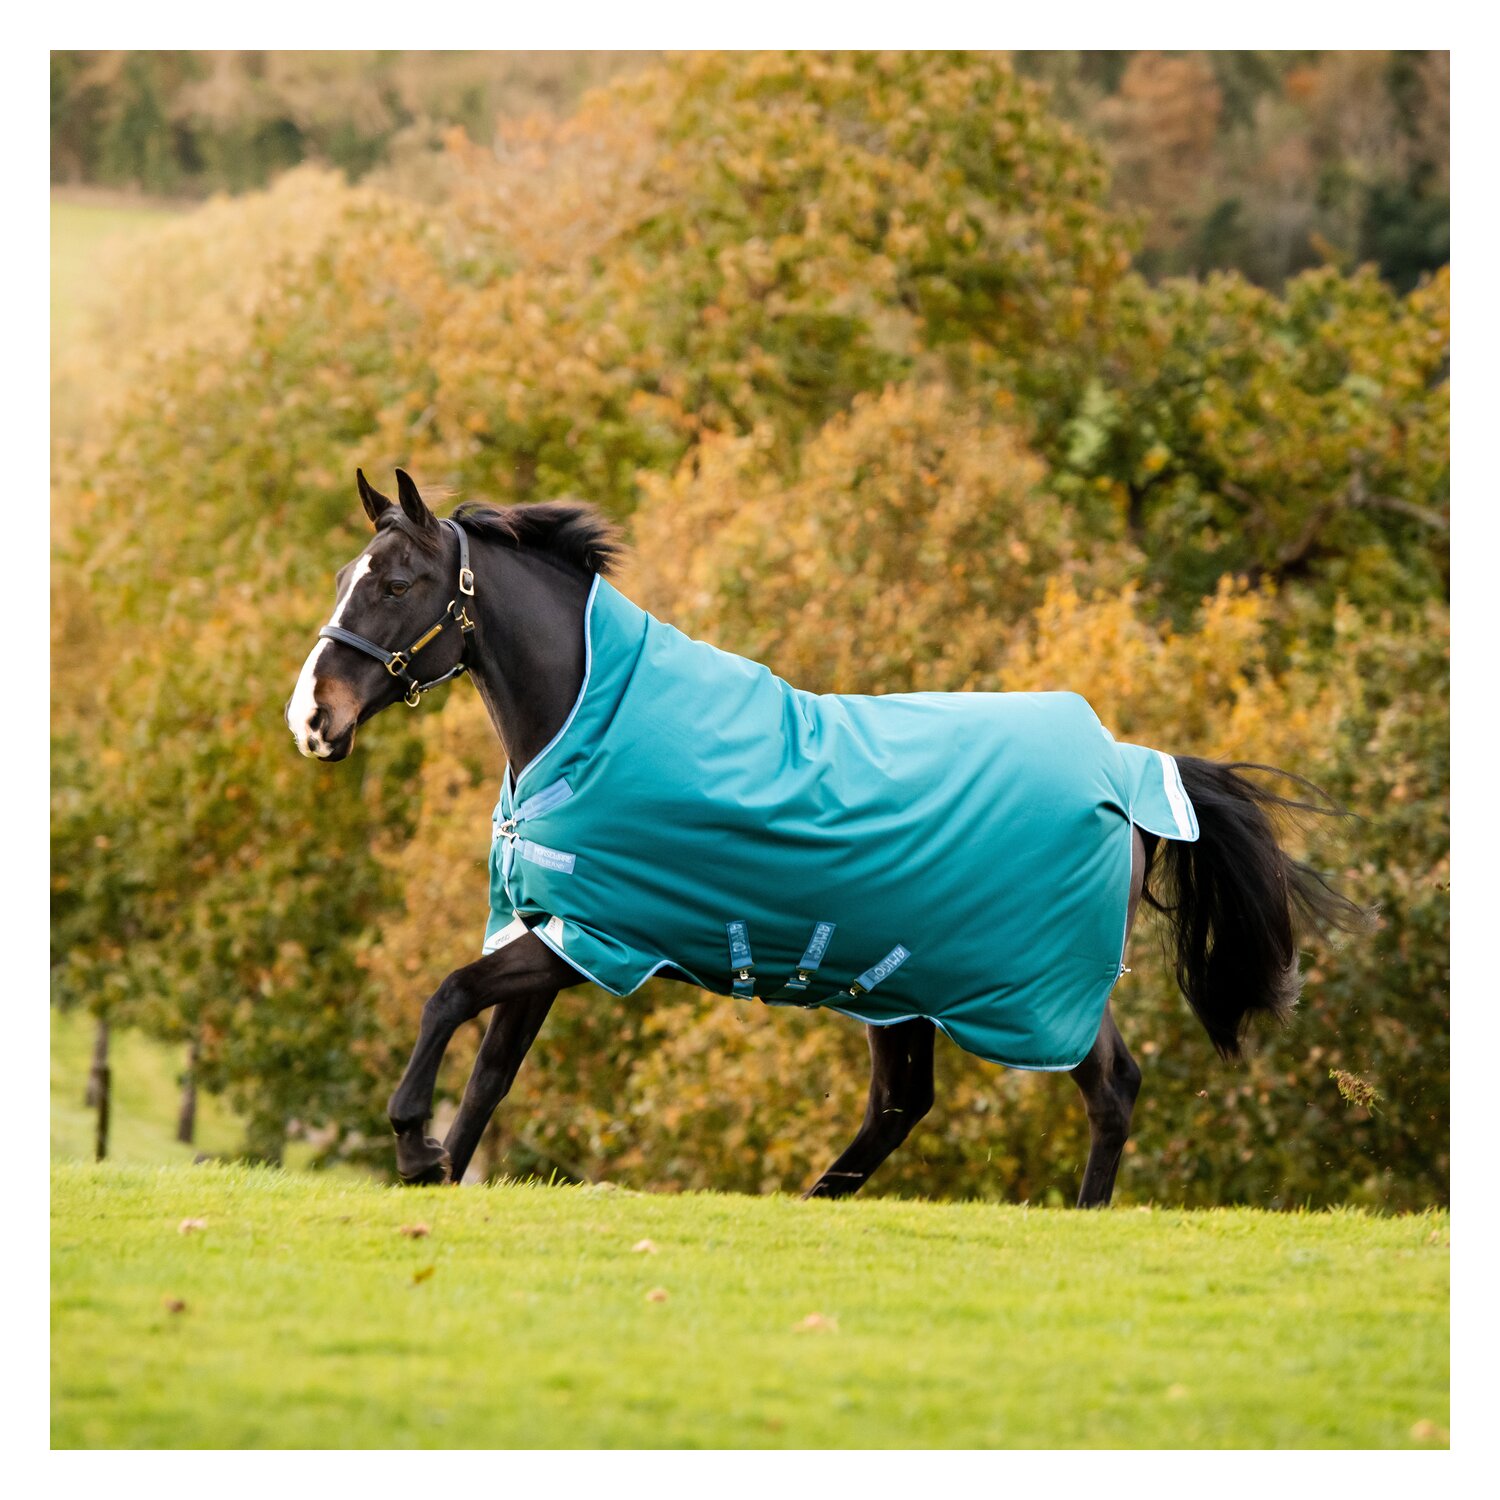 HORSEWARE Outdoordecke Regendecke Amigo Bravo 12 Wug Lite 0g - green/turquoise - 145 cm